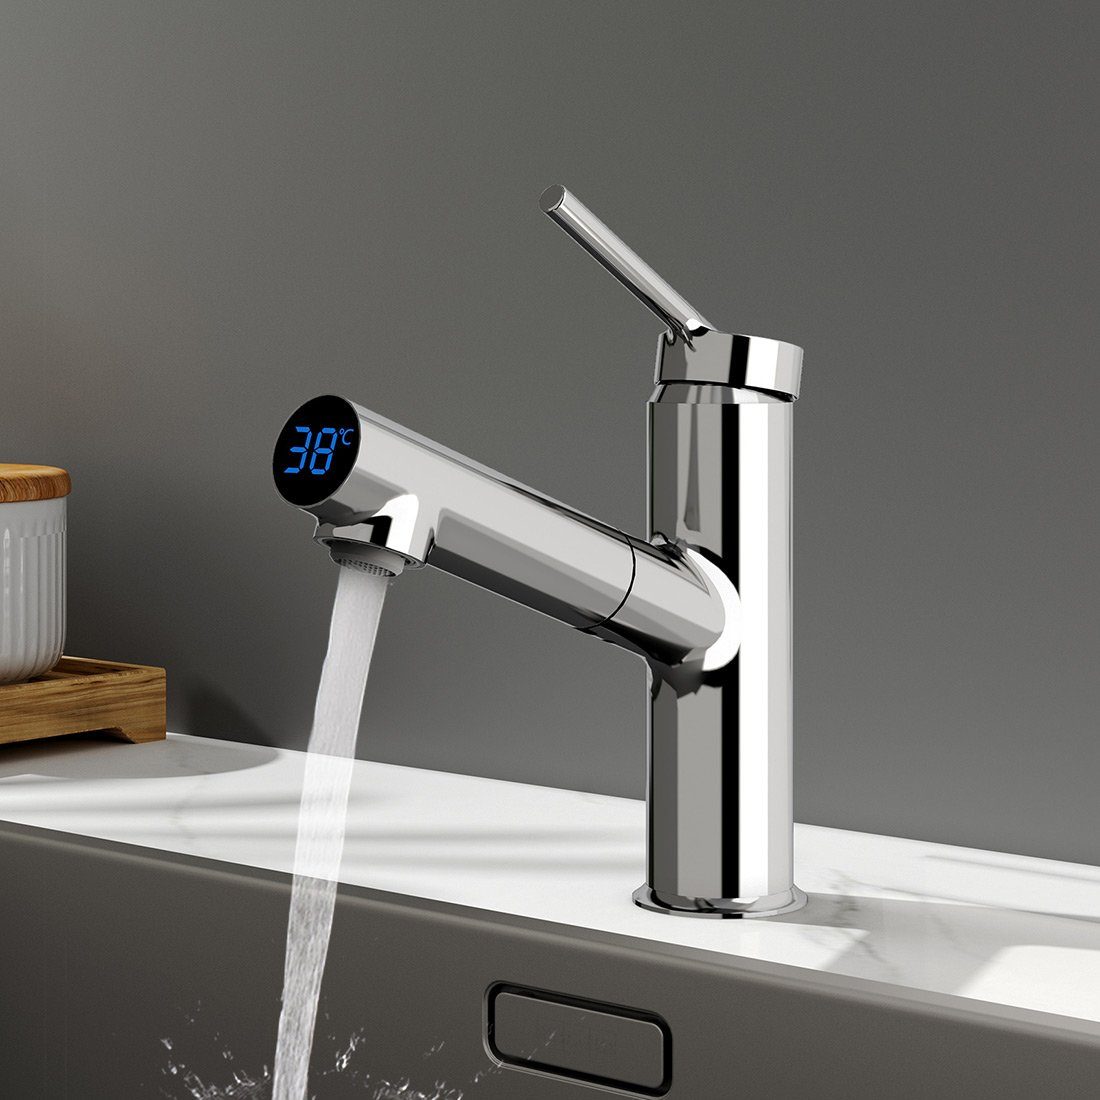 EMKE Küchenarmatur Wasserhahn mit Temperaturanzeige Edelstahl Küchenarmatur LED-Display,60 cm Schlauch,Höhe 19.1cm